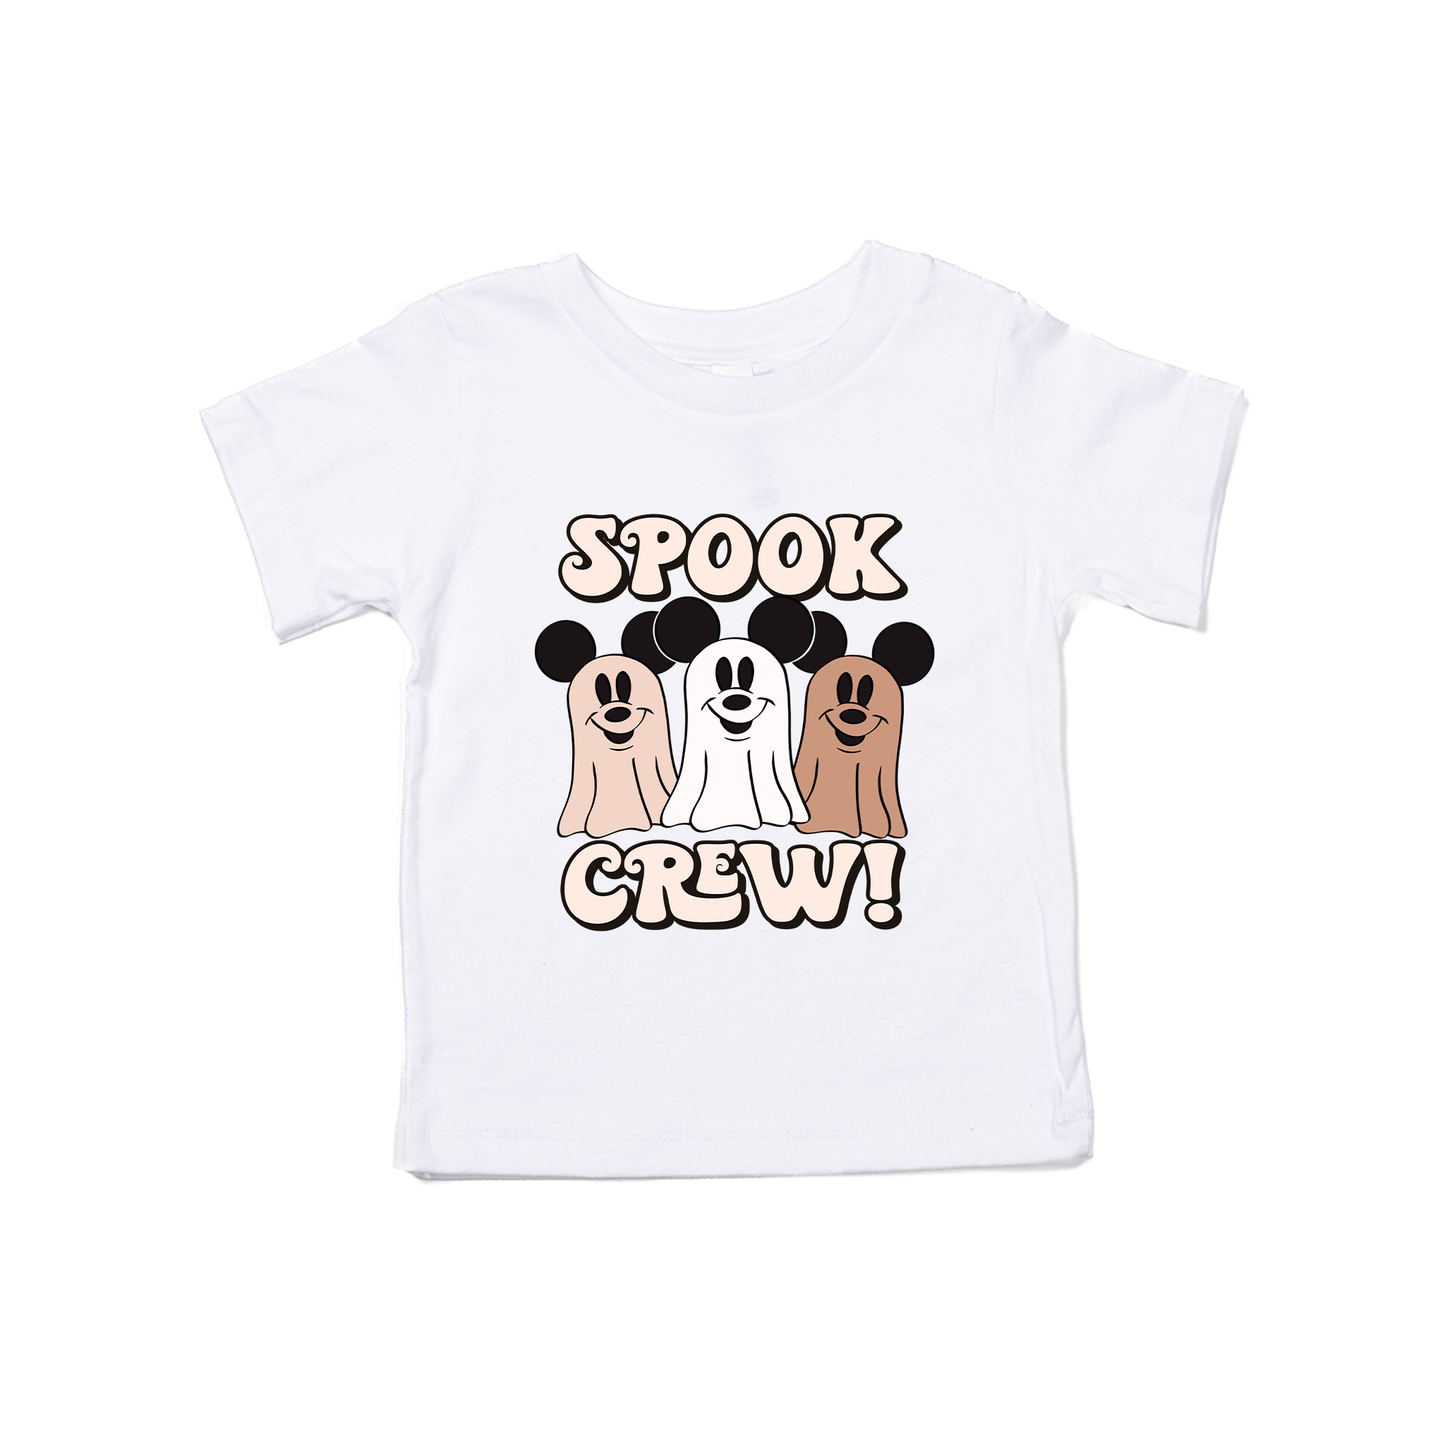 Spook Crew - Kids Tee (White)